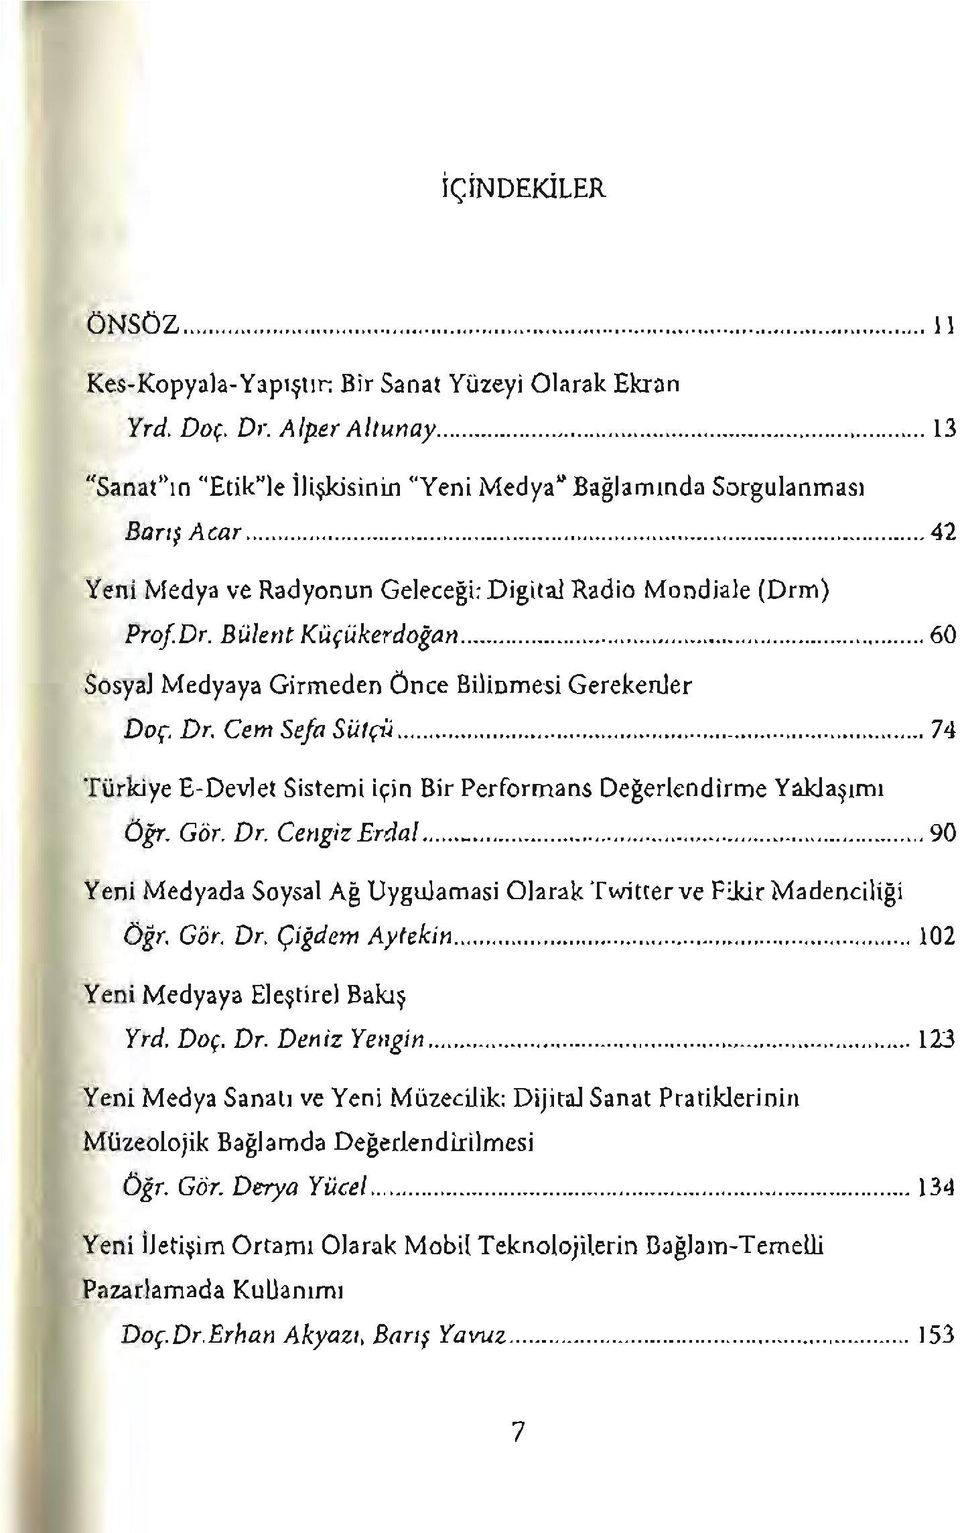 .. 74 Türkiye E-Devlet Sistemi için Bir Performans Değerlendirme Yaklaşımı Öğr. Gör. Dr. Cengiz Erdal... 90 Yeni Medyada Soysal Ağ Uygulamasi Olarak Twitter ve Fikir Madenciliği Öğr. Gör. Dr. Çiğdem Aytekin.